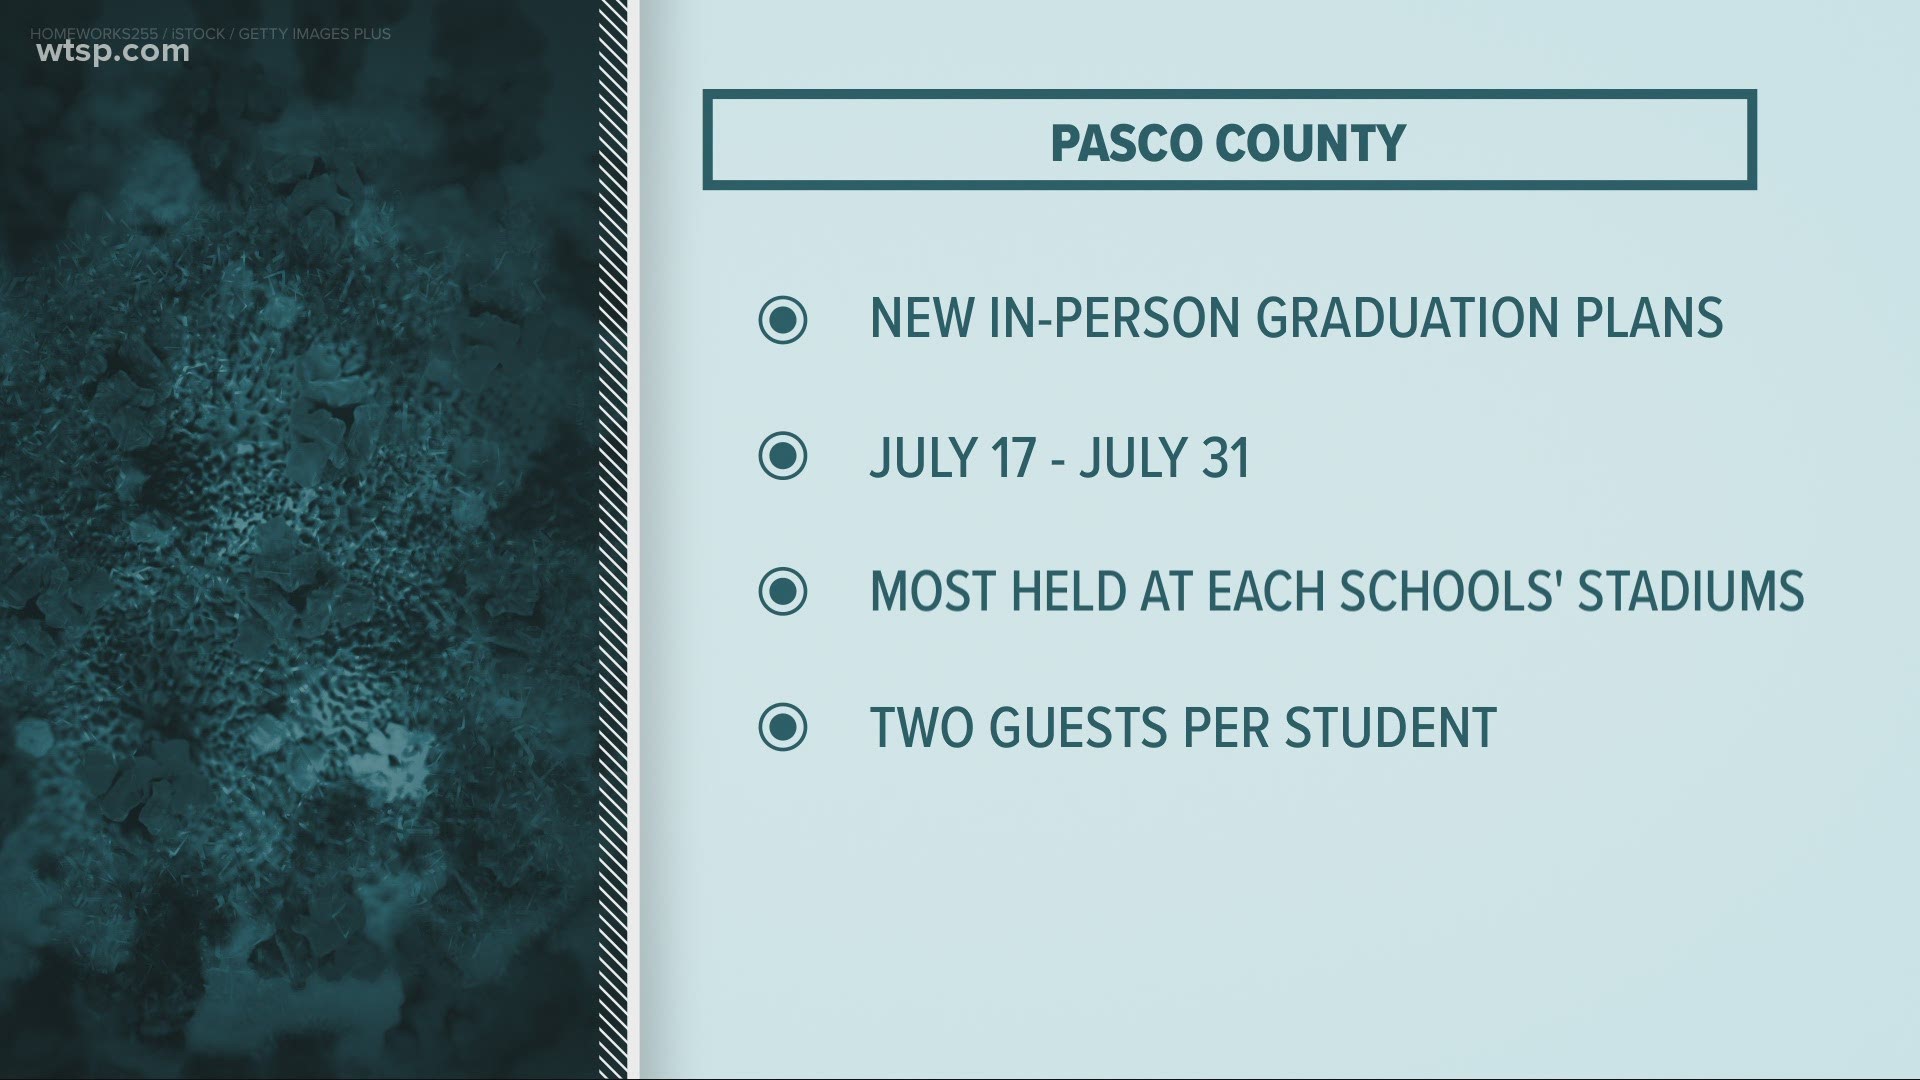 Pasco County announces new graduation plans.